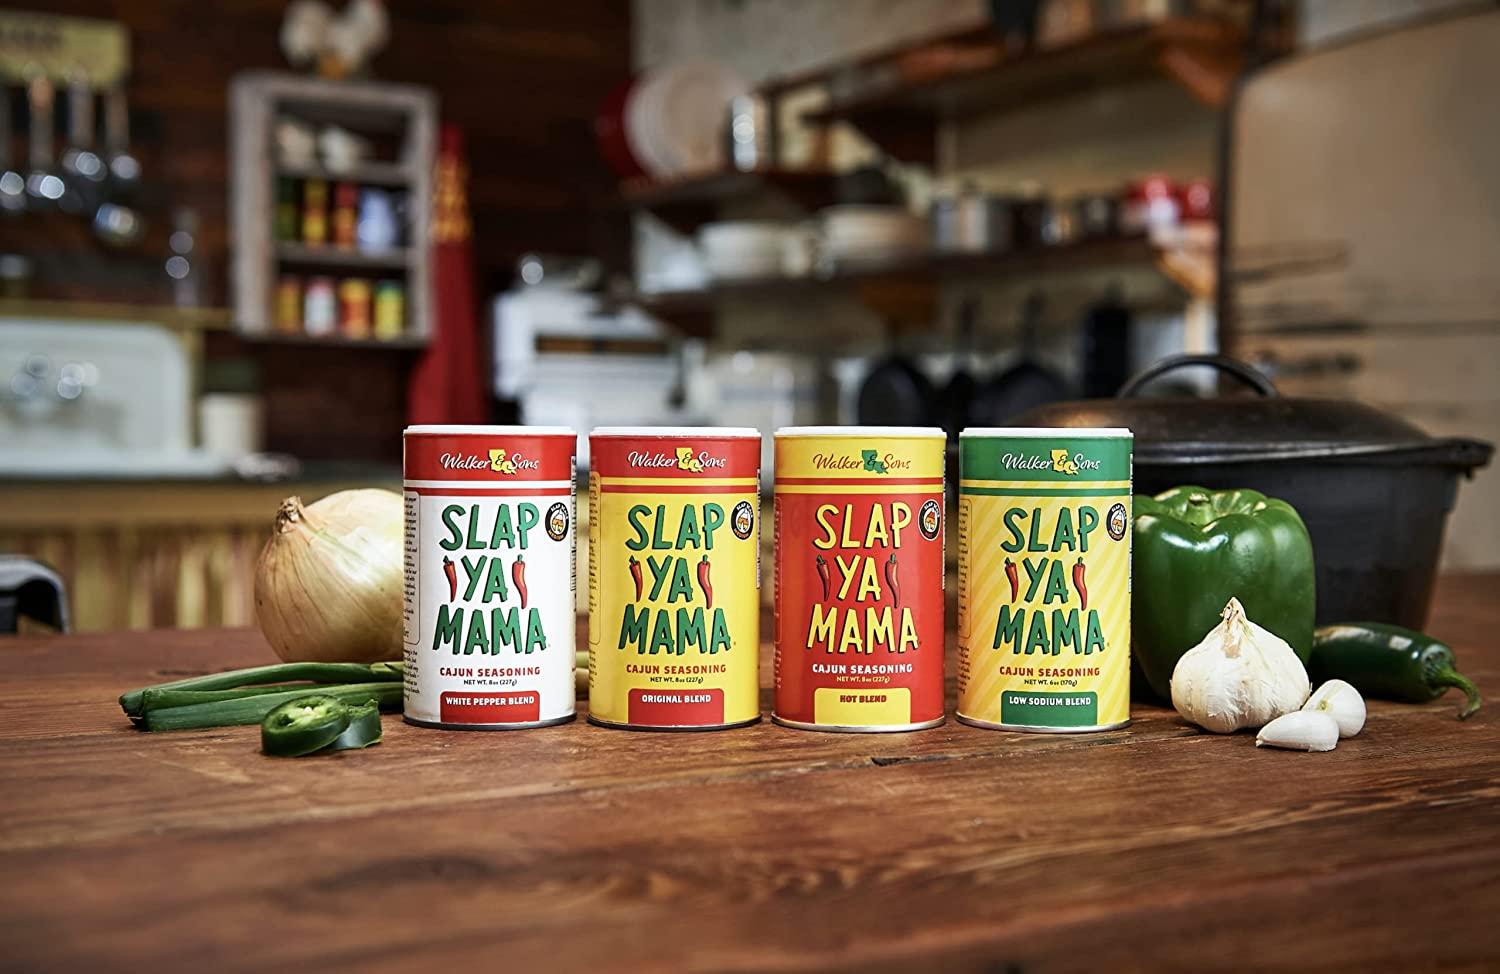  Slap Ya Mama Cajun Seasoning from Louisiana, Original